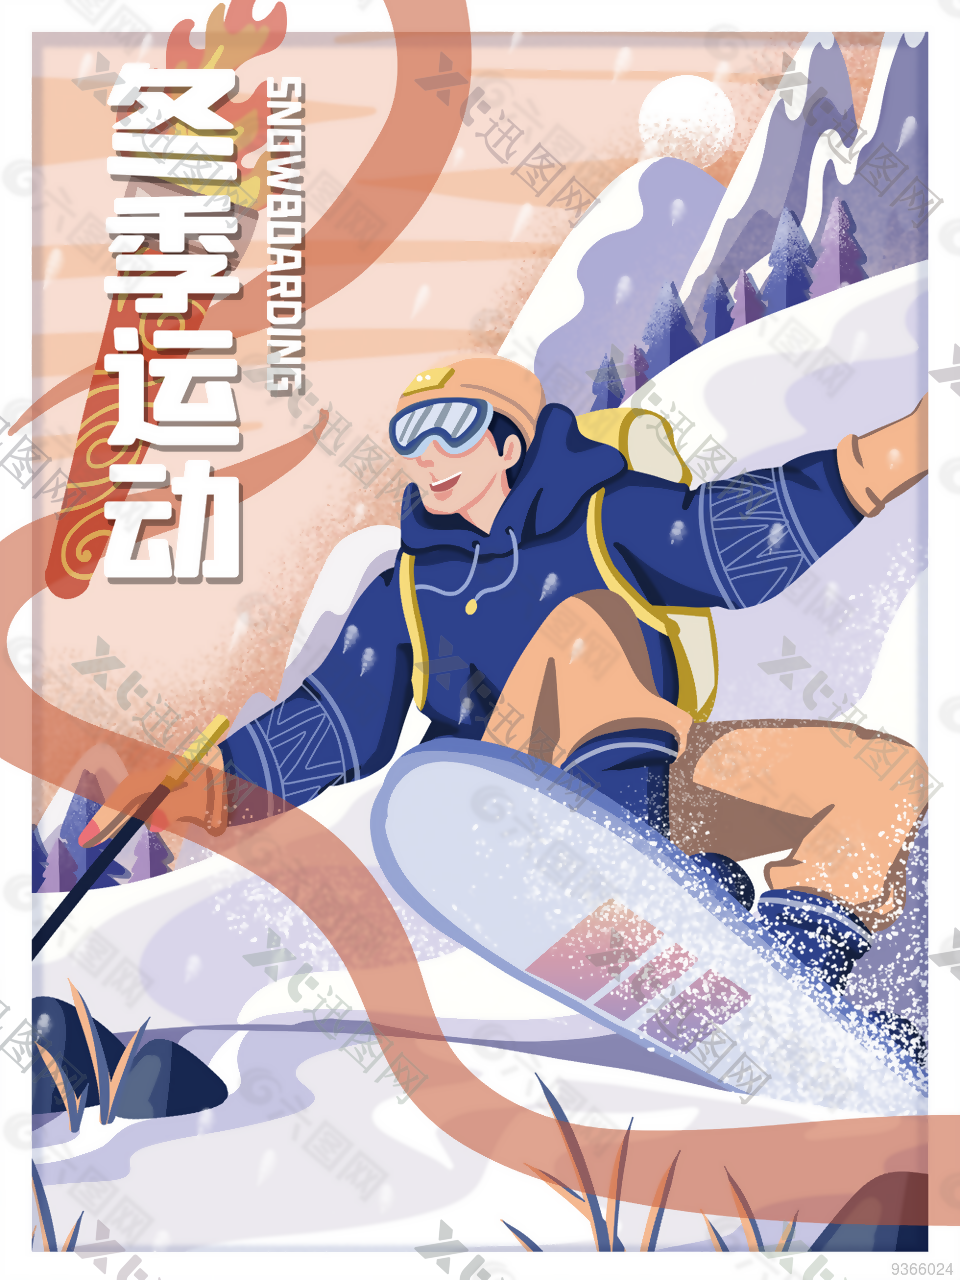 冬季滑雪运动插画设计